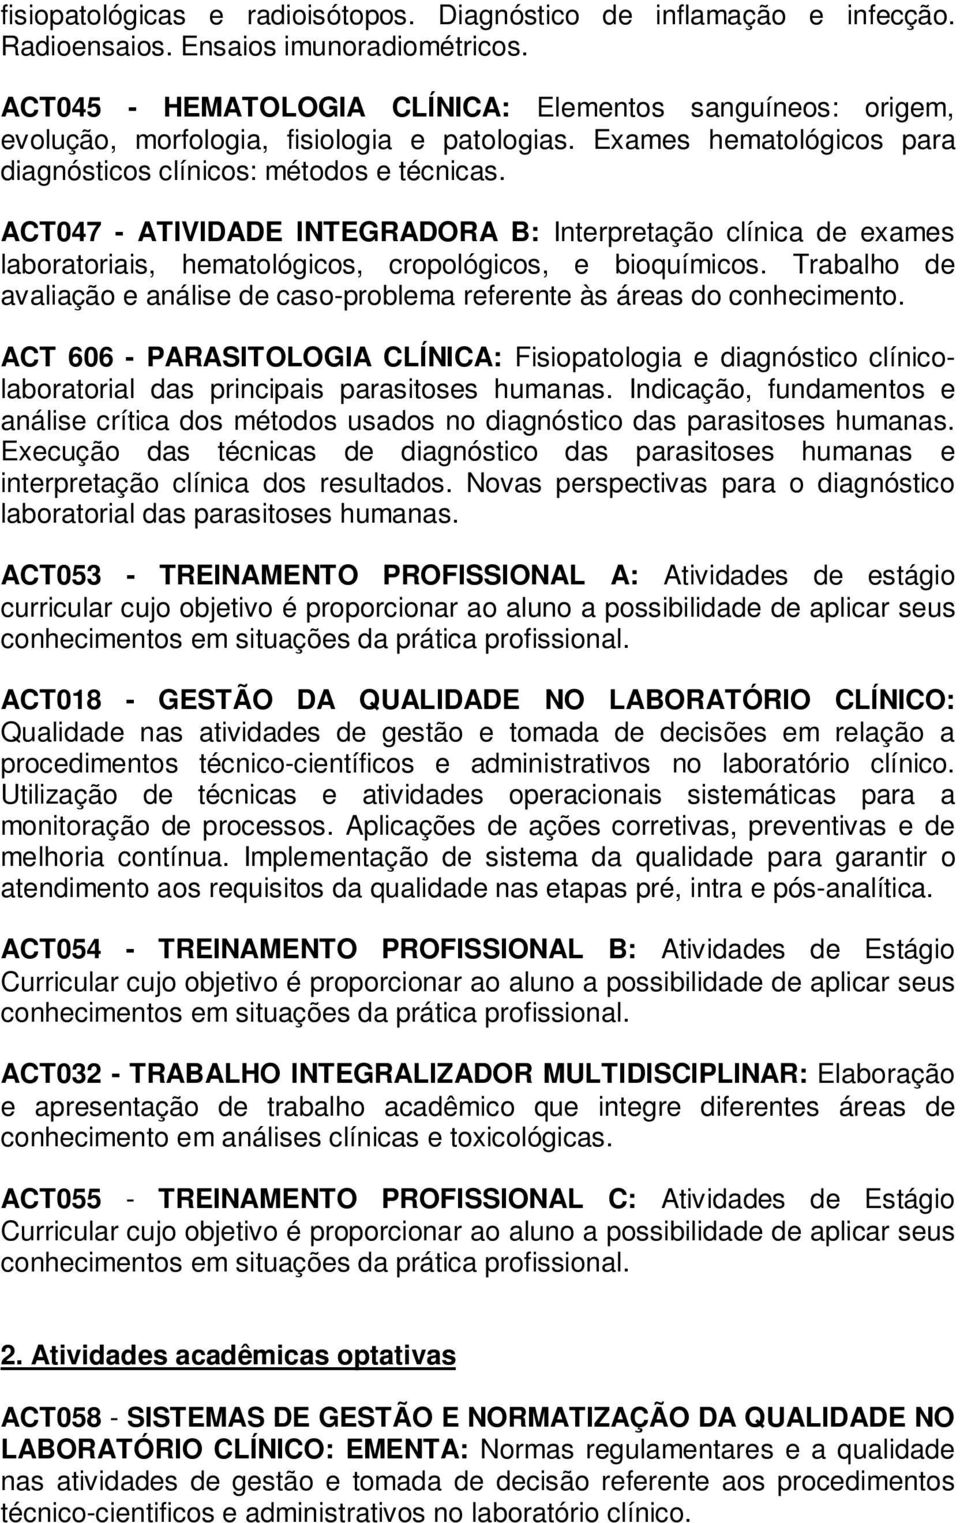 ACT047 - ATIVIDADE INTEGRADORA B: Interpretação clínica de exames laboratoriais, hematológicos, cropológicos, e bioquímicos.